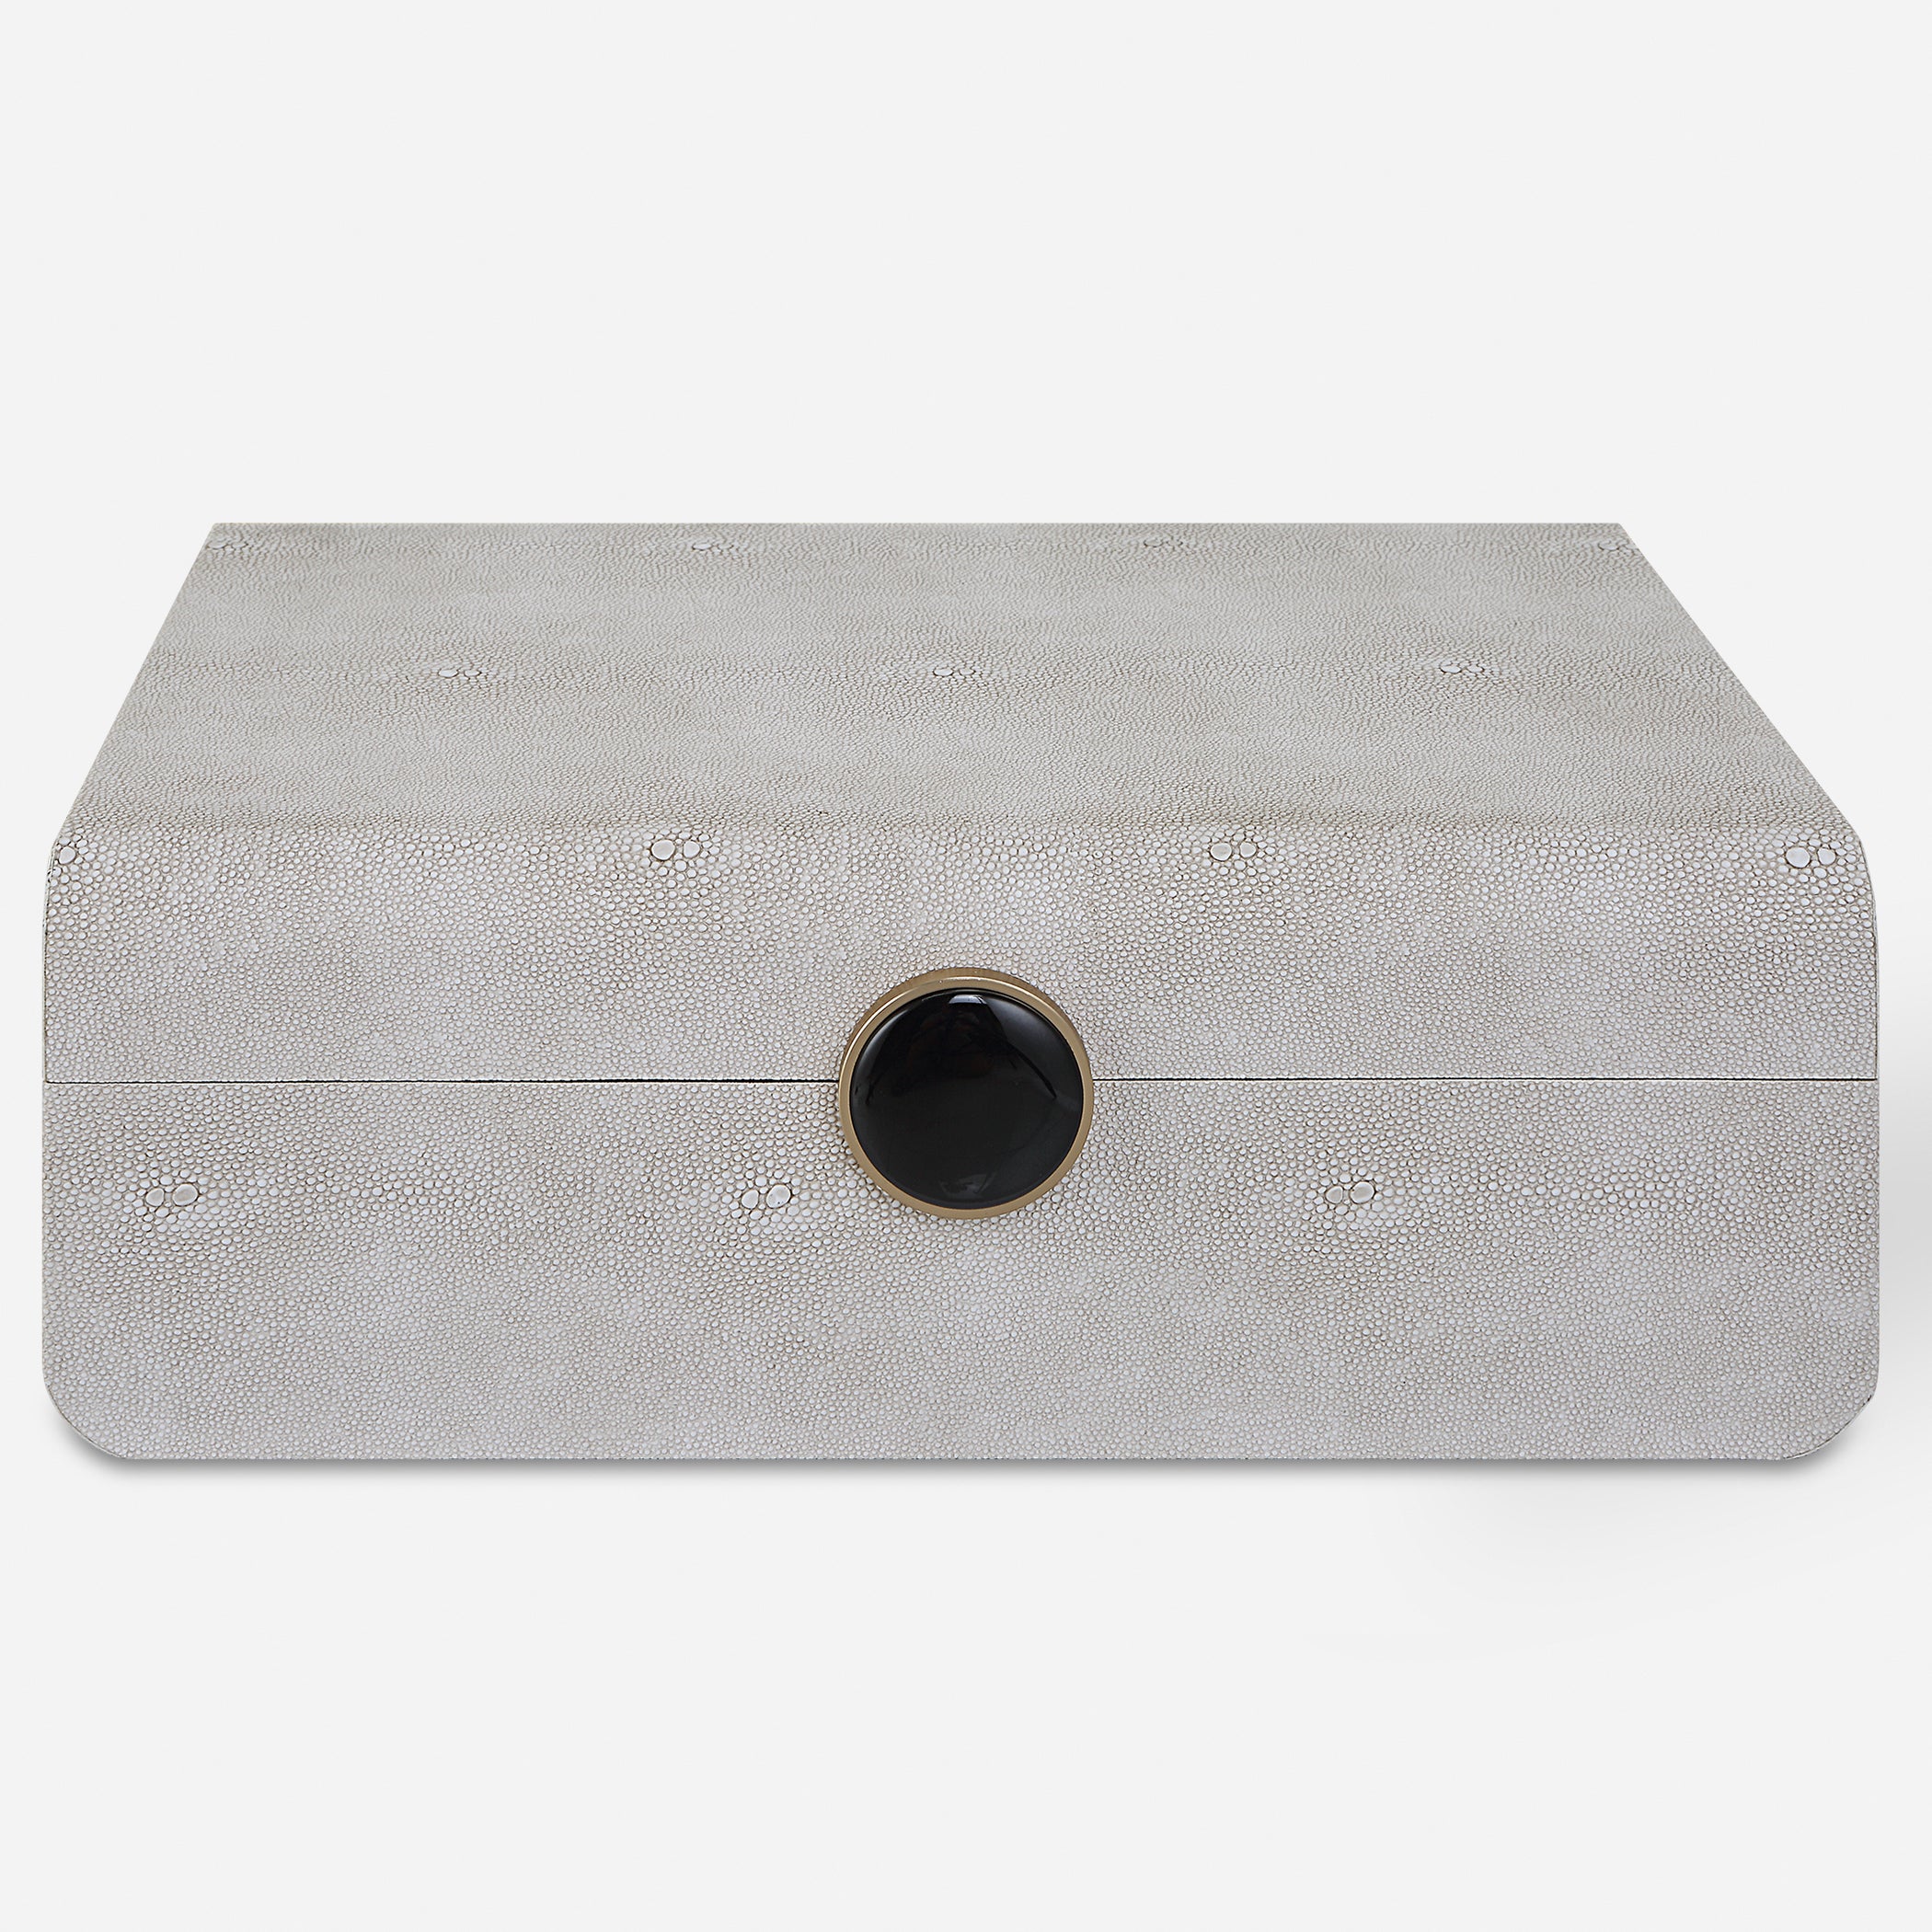 Uttermost Lalique White Shagreen Box Décor/Home Accent Uttermost   